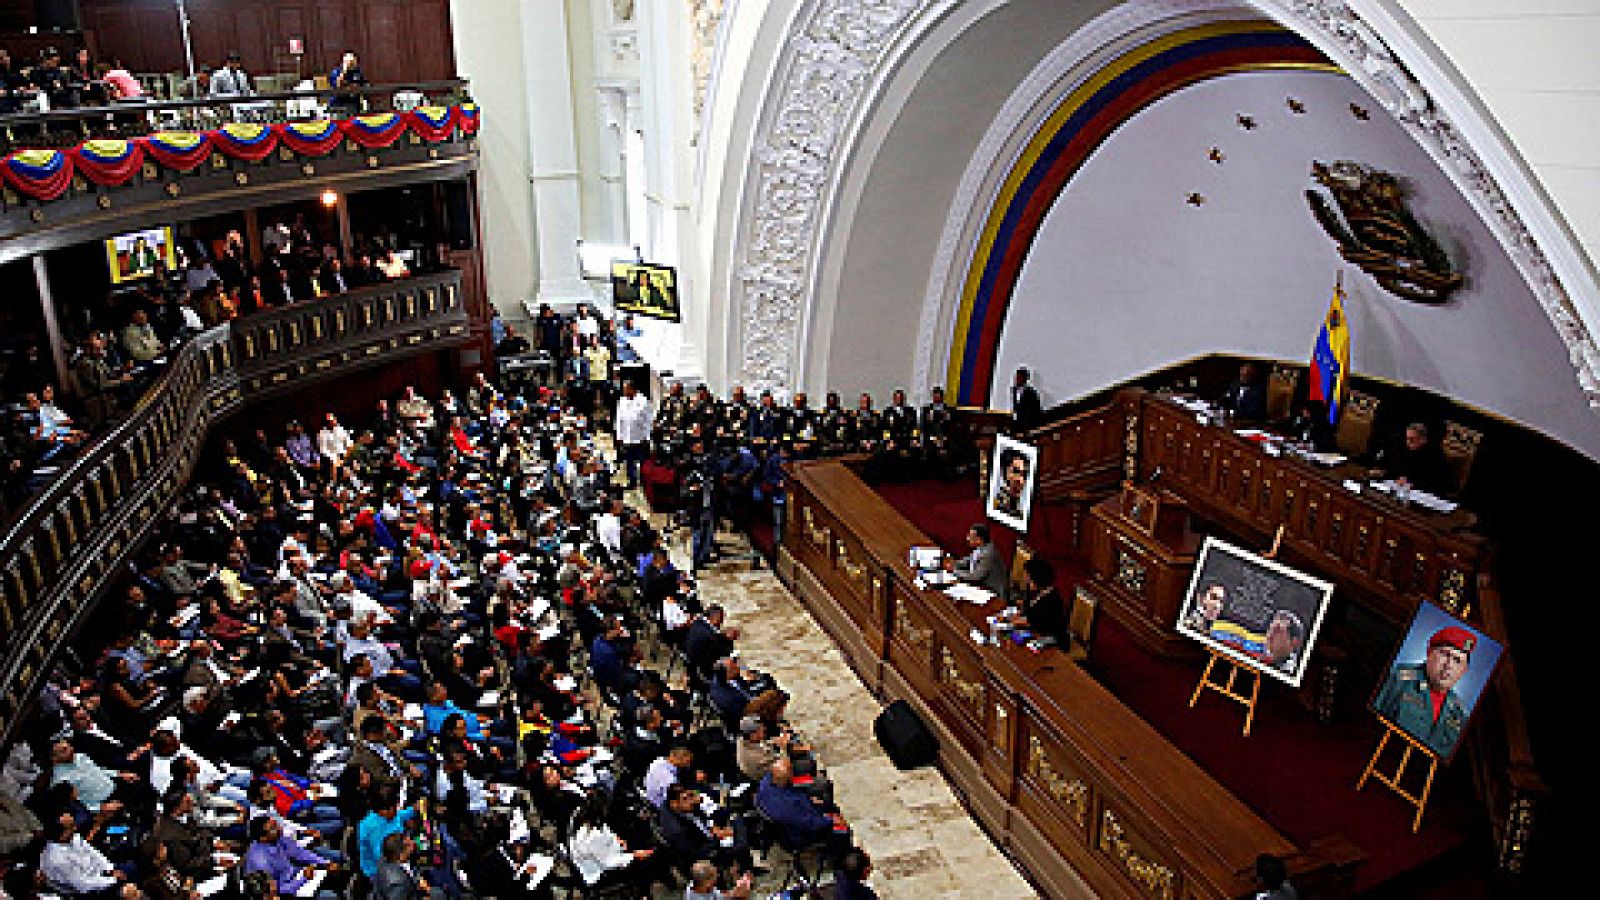 Telediario 1: La Asamblea Constituyente de Venezuela celebra su primera sesión en el hemiciclo del Parlamento tras impedir el acceso de la oposición | RTVE Play